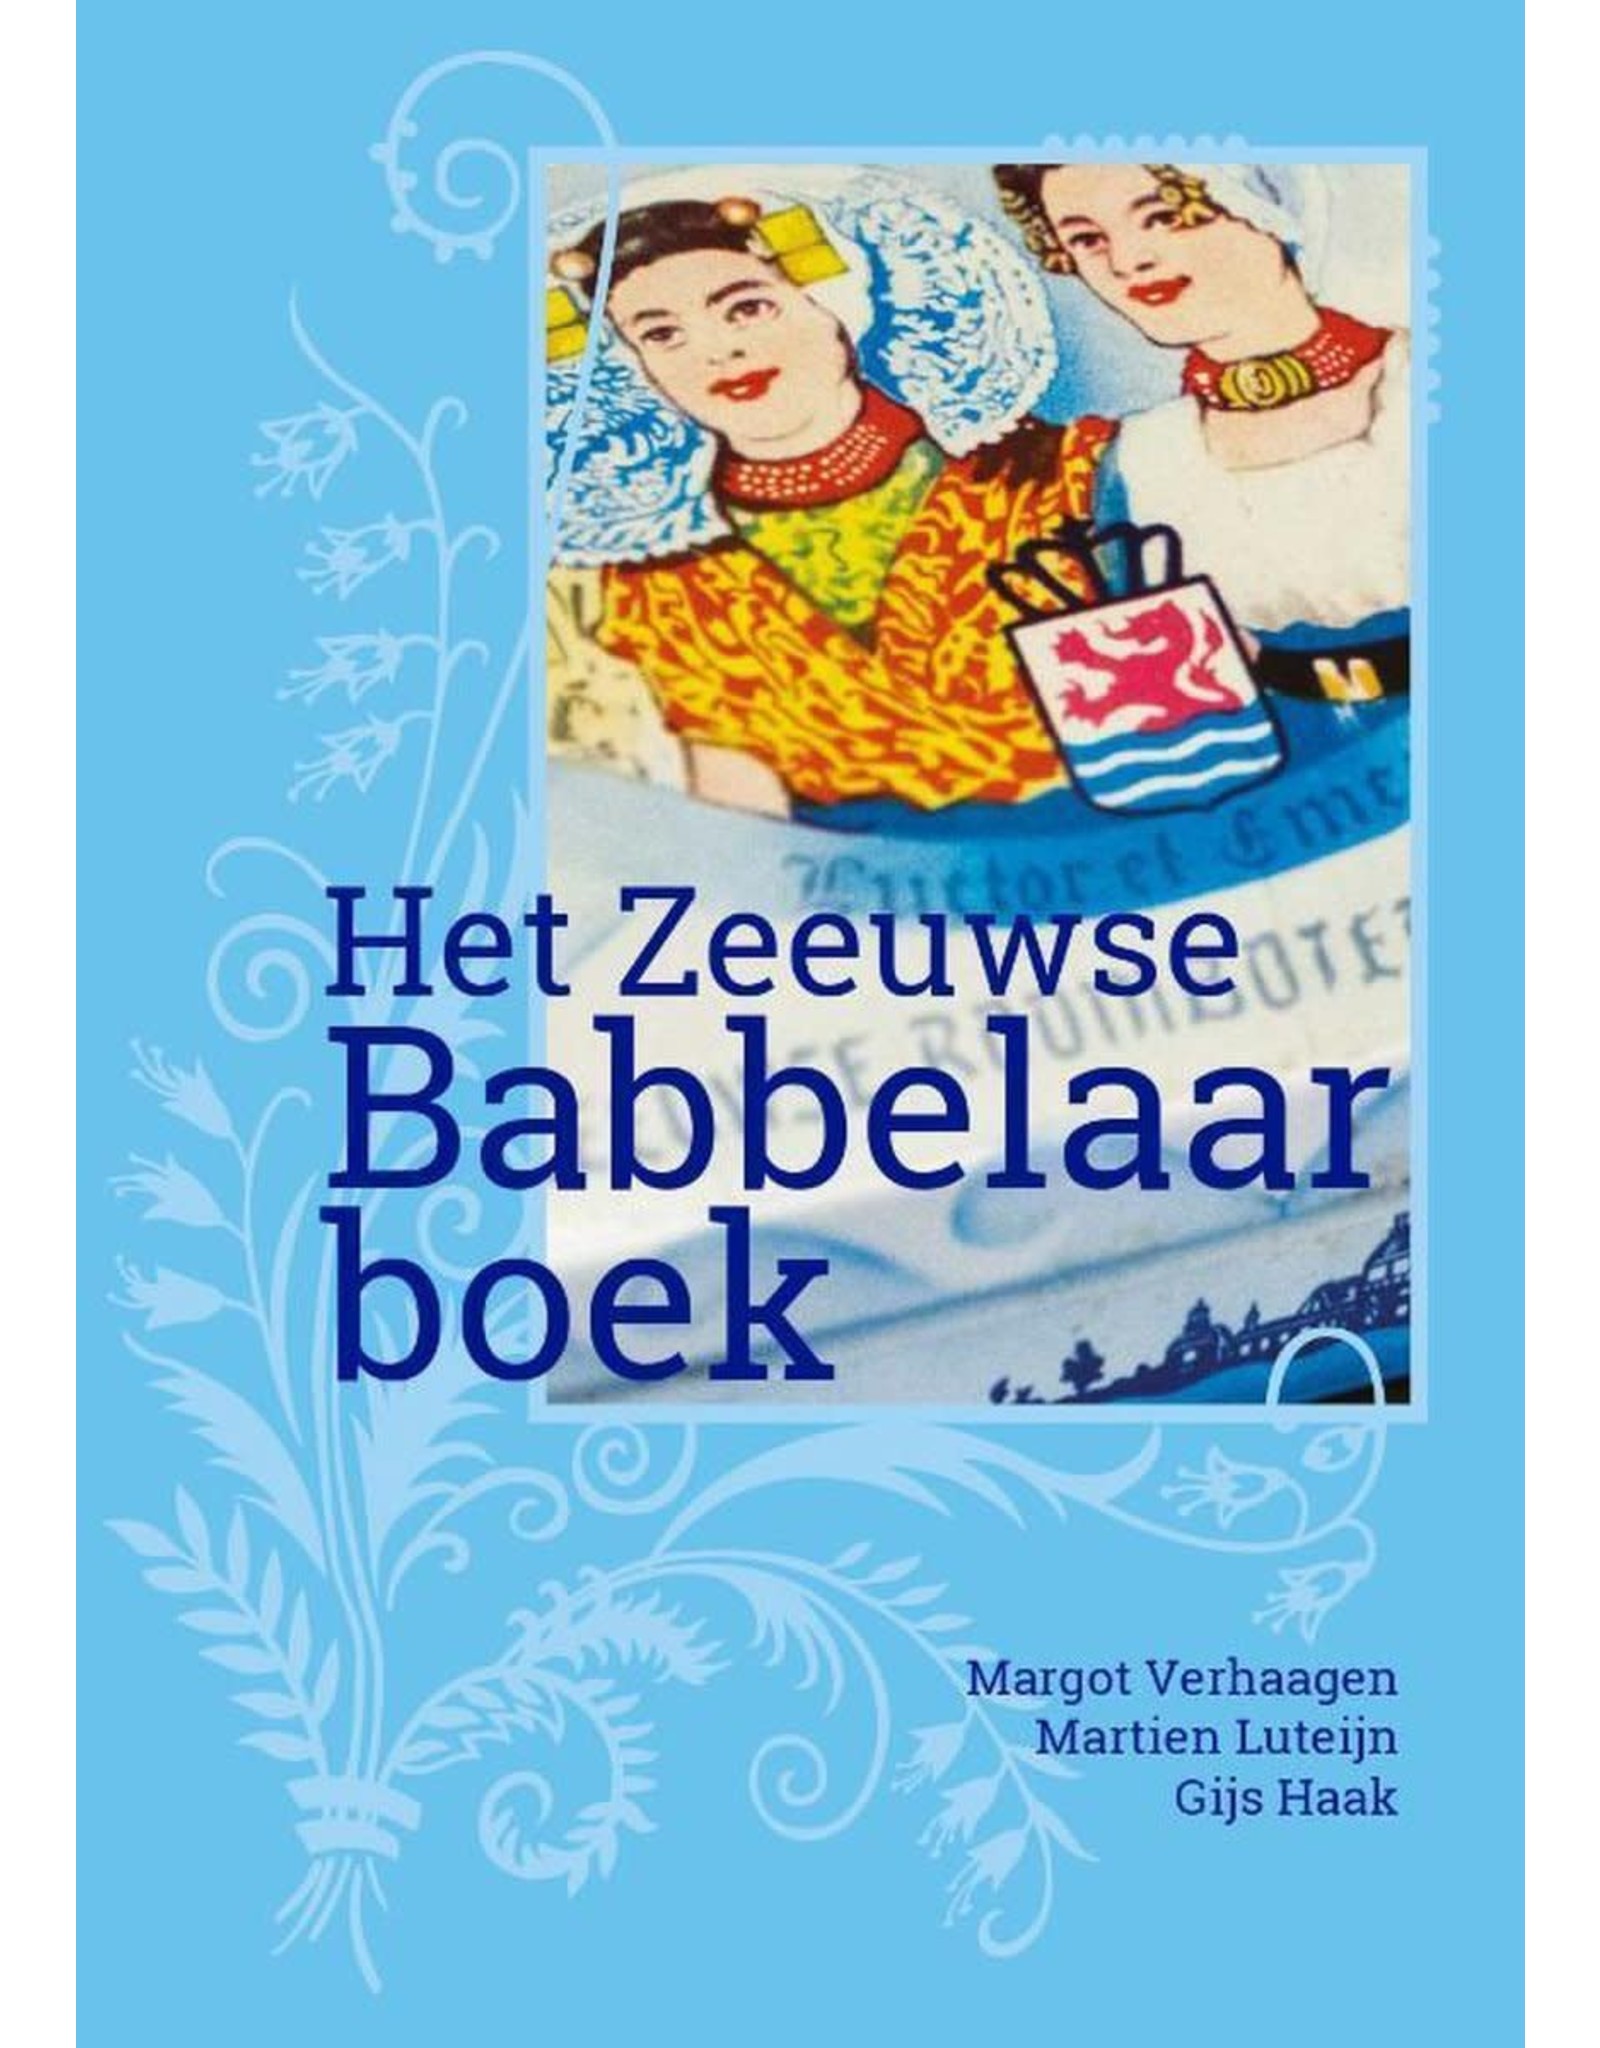 Het Zeeuwse Babbelaarboek - Margot Verhaagen